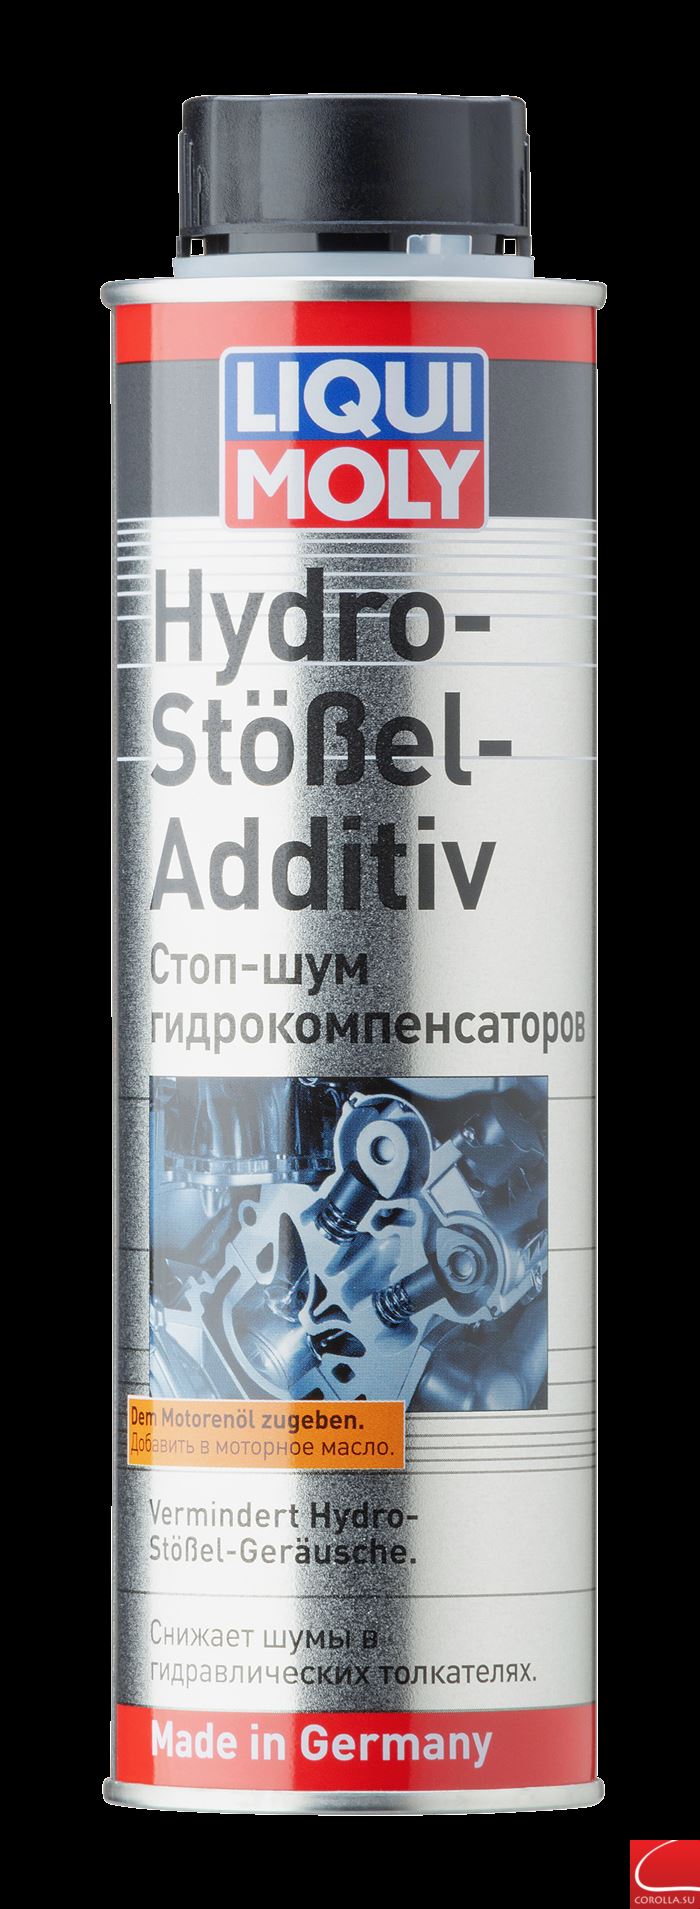 Присадка Hydro-Stocel.